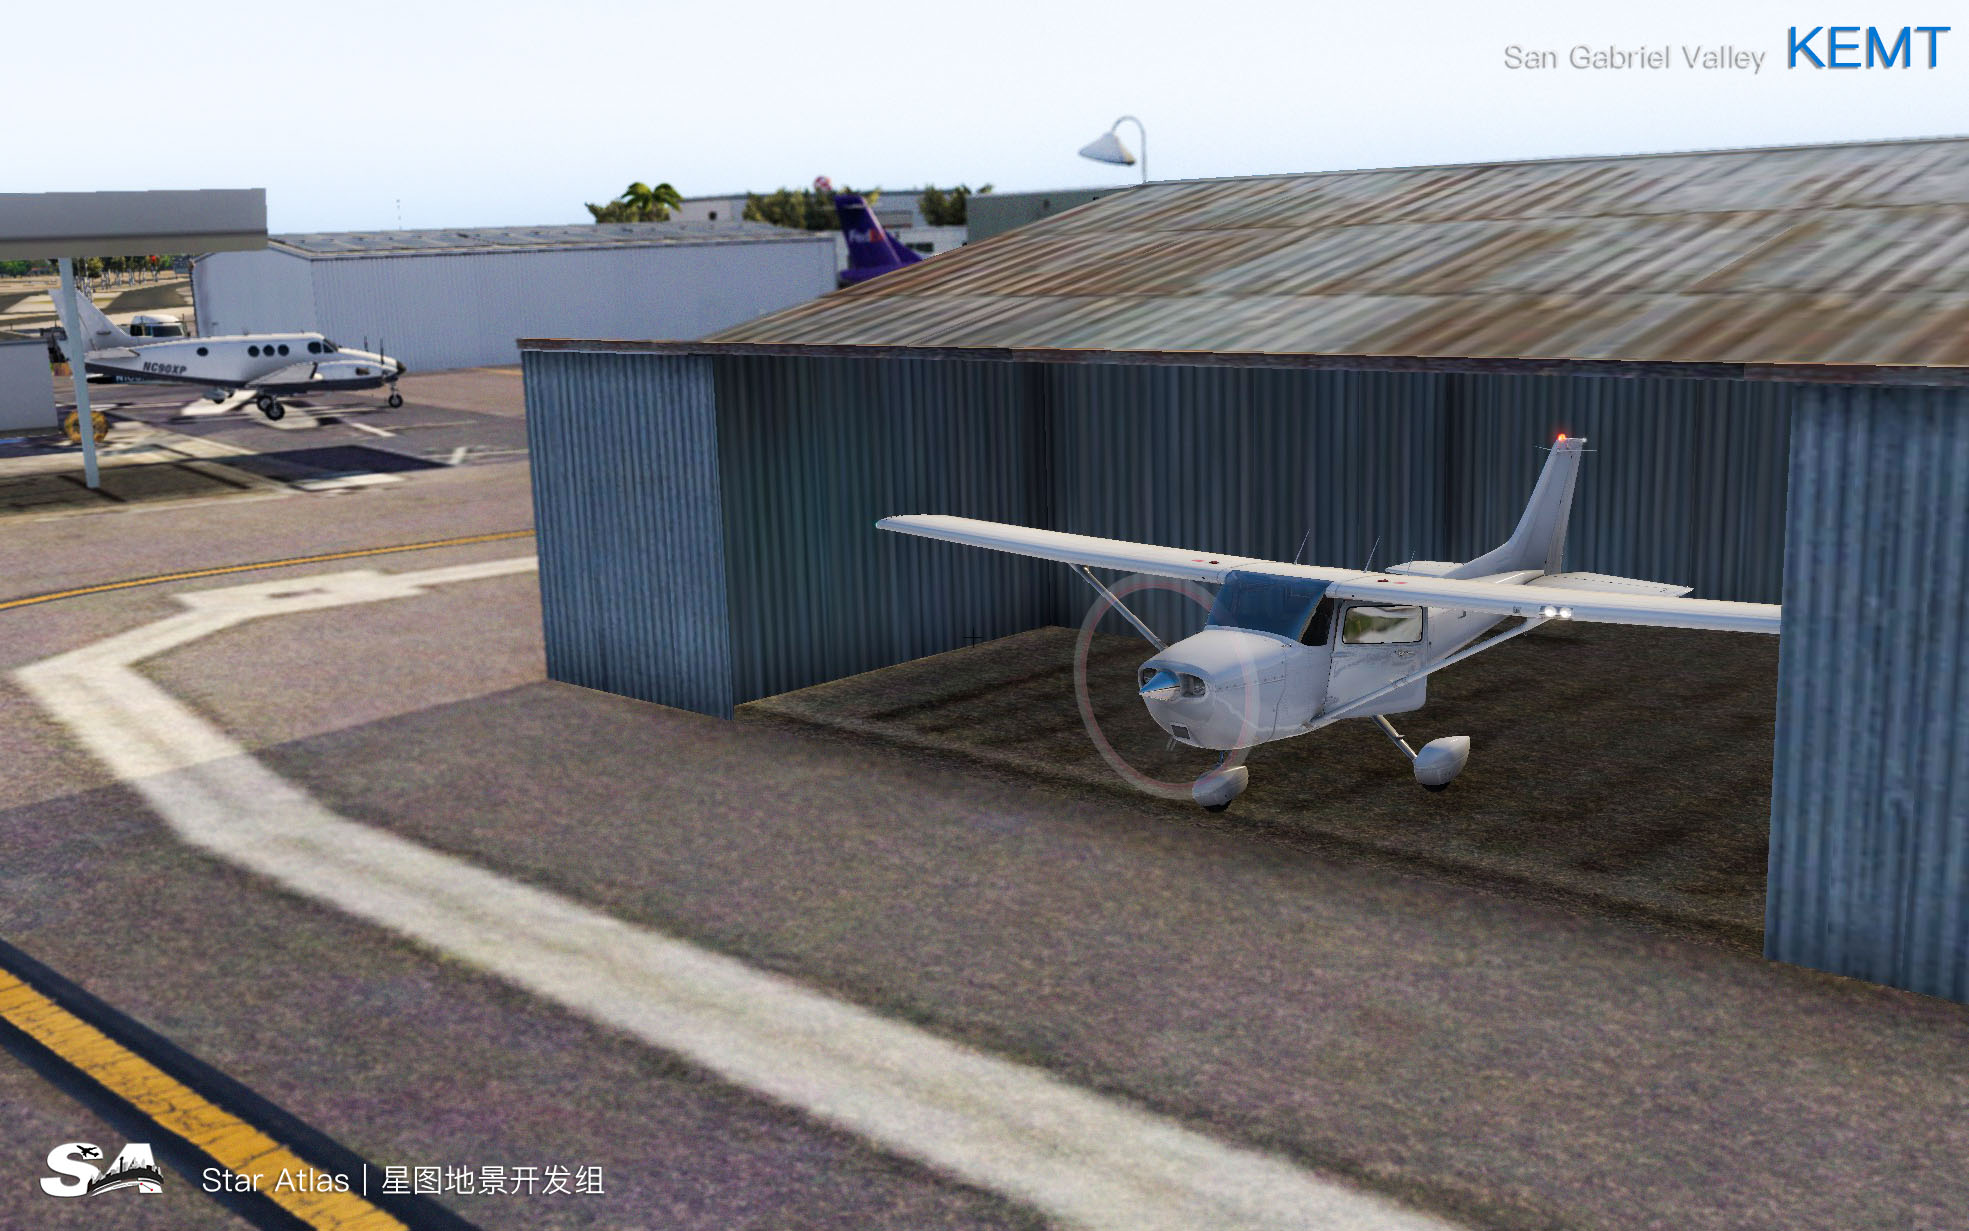 【X-Plane】KEMT-圣盖博谷机场 HD 1.0-3495 